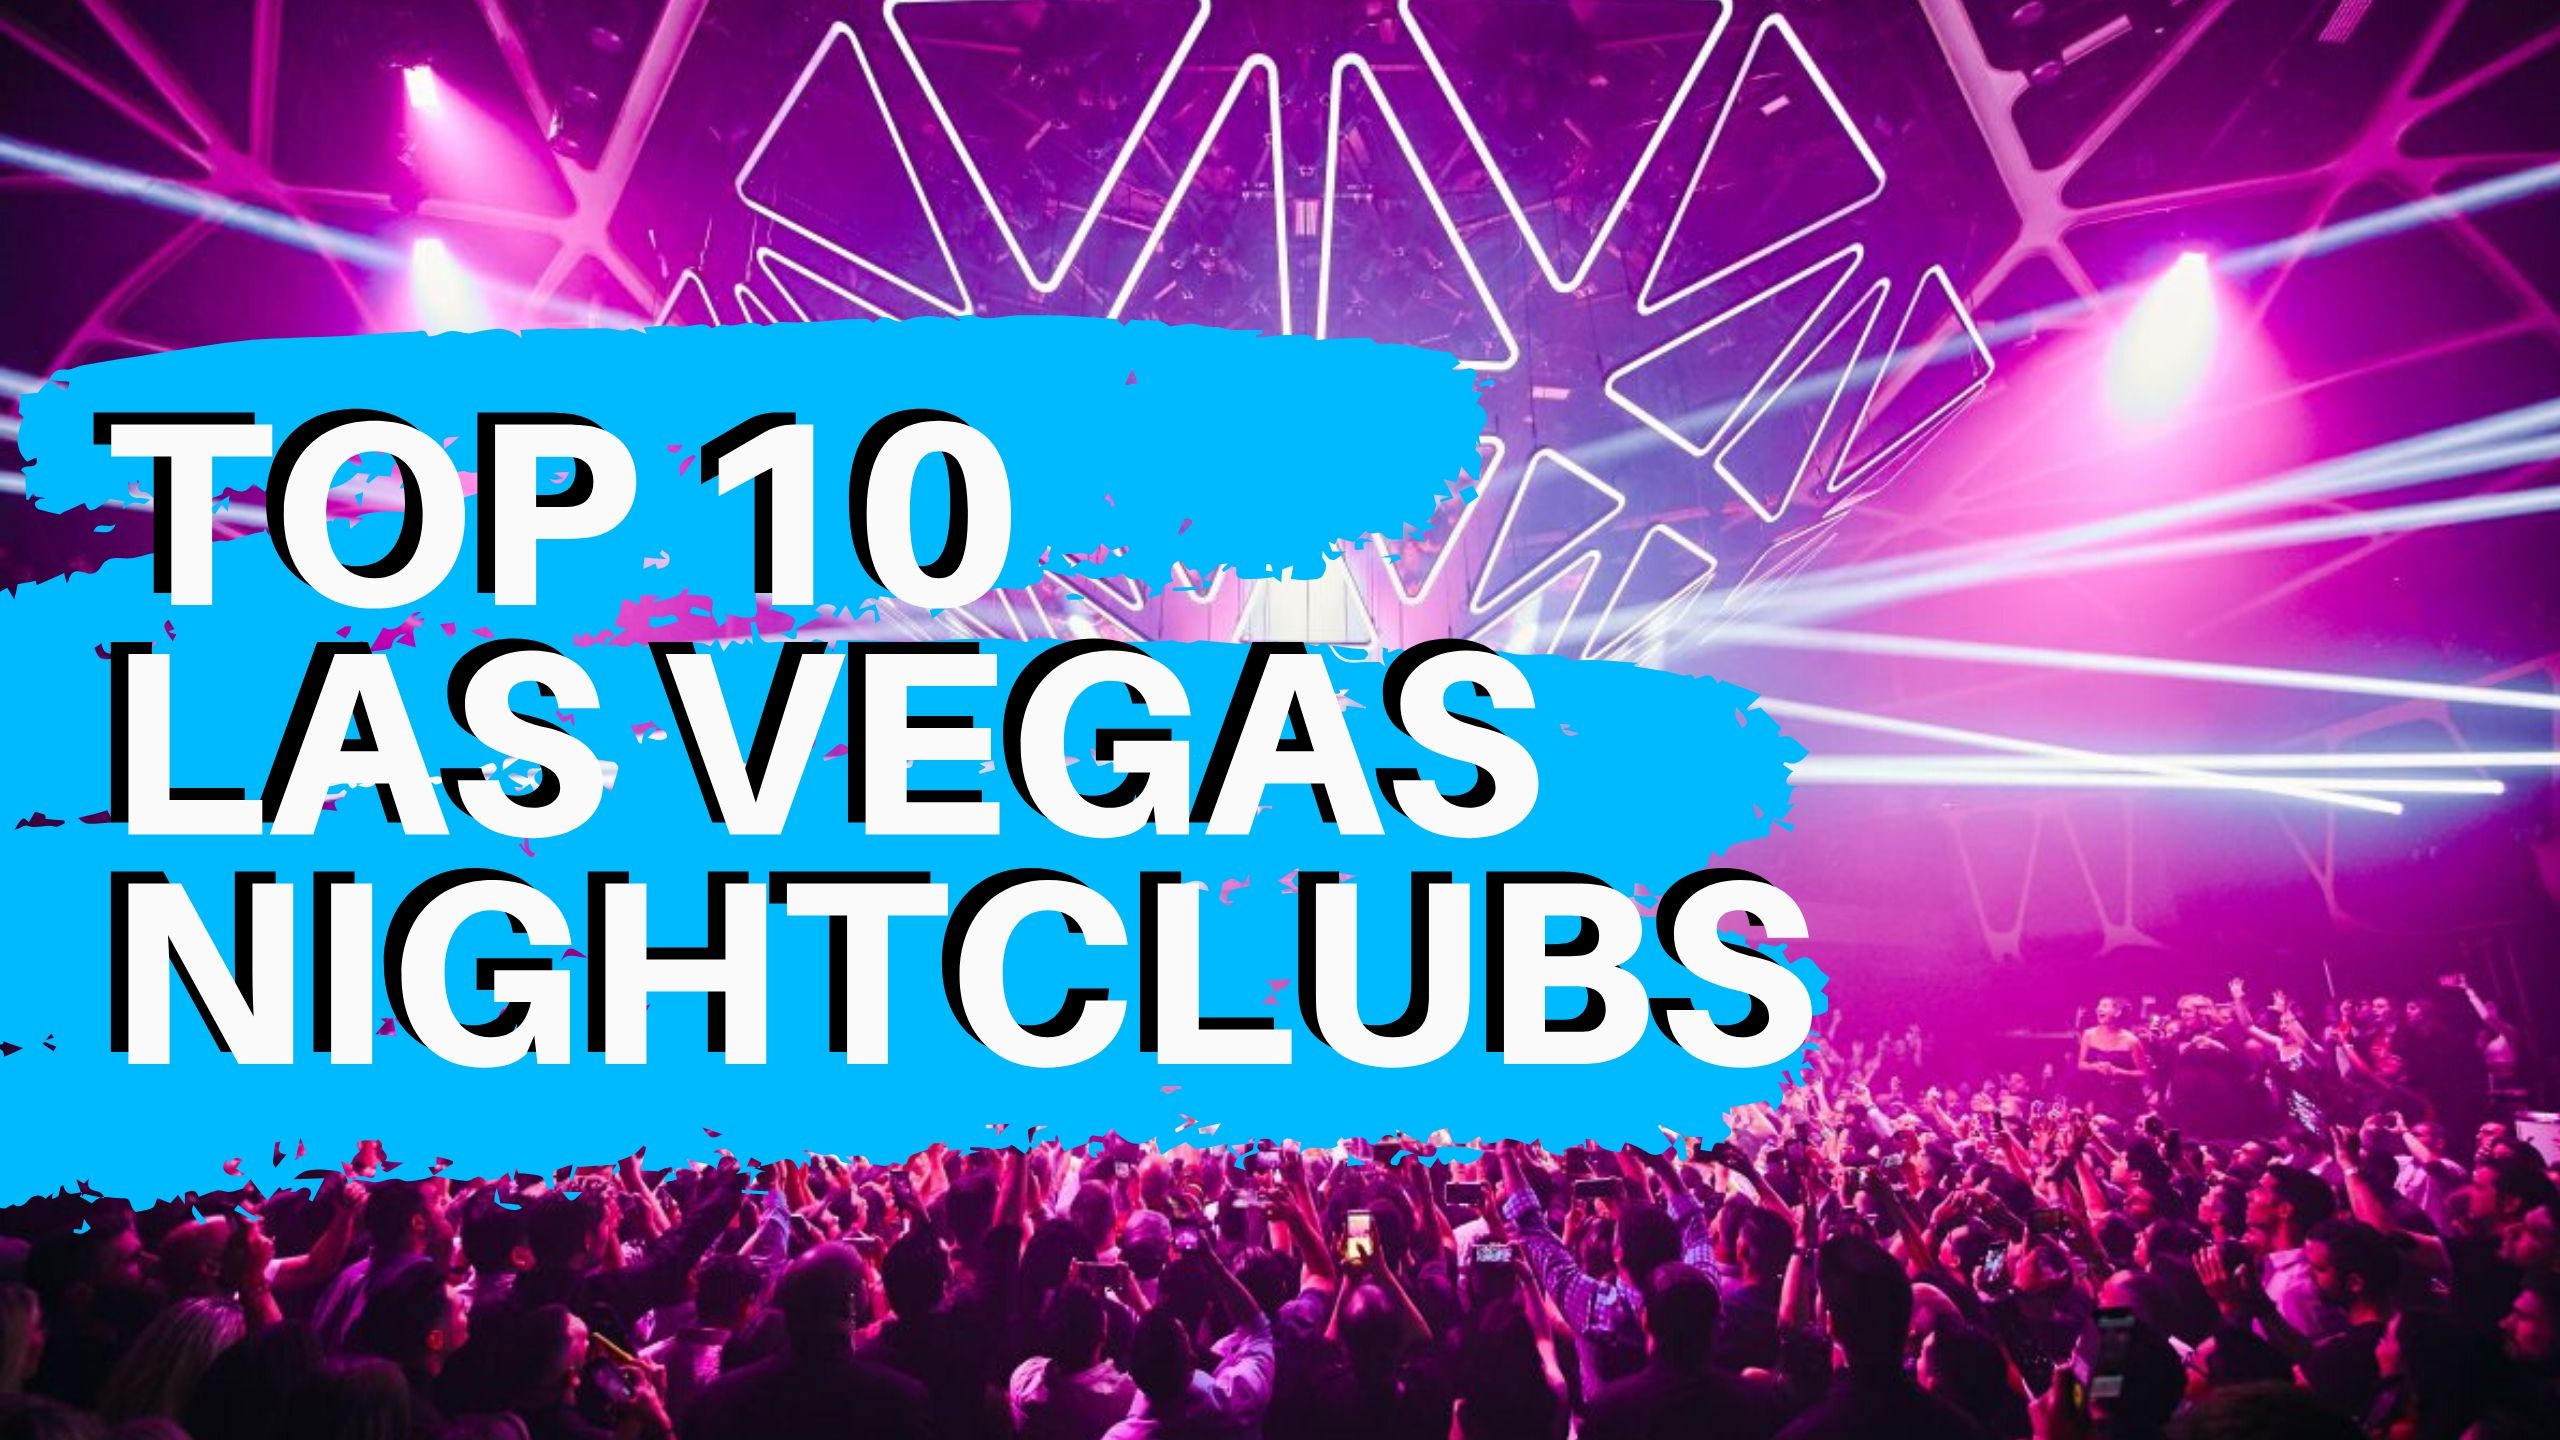 Top 10 Las Vegas Nightclubs The Best Clubs In Vegas Nightlife Video